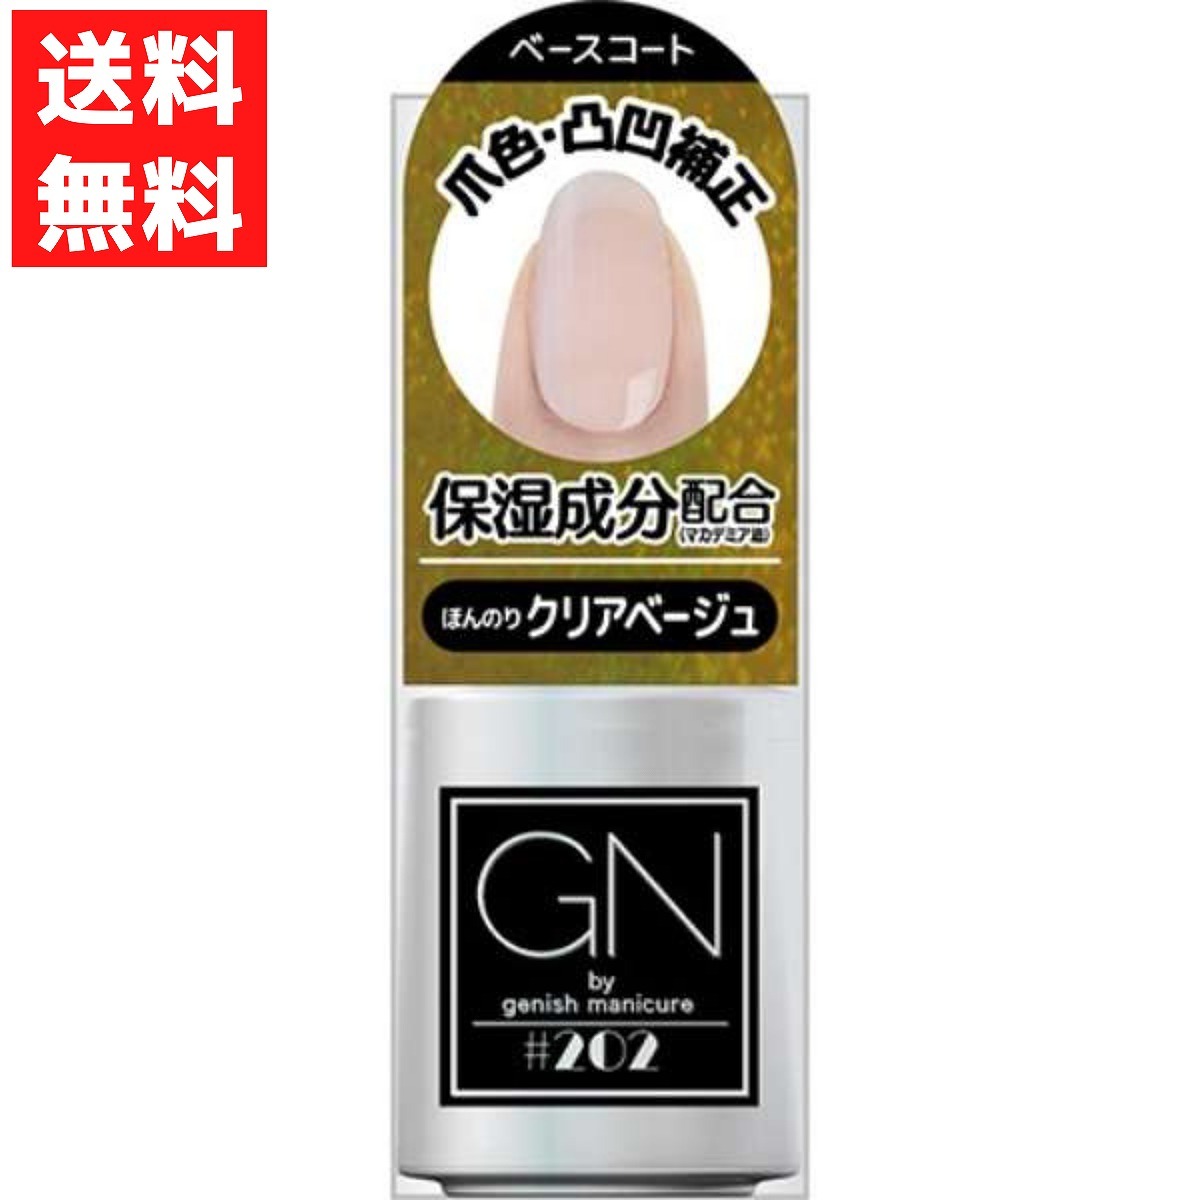 ji-enbaiji-nishu manicure 202 base coat 5ml gel nails . sharing . super speed .